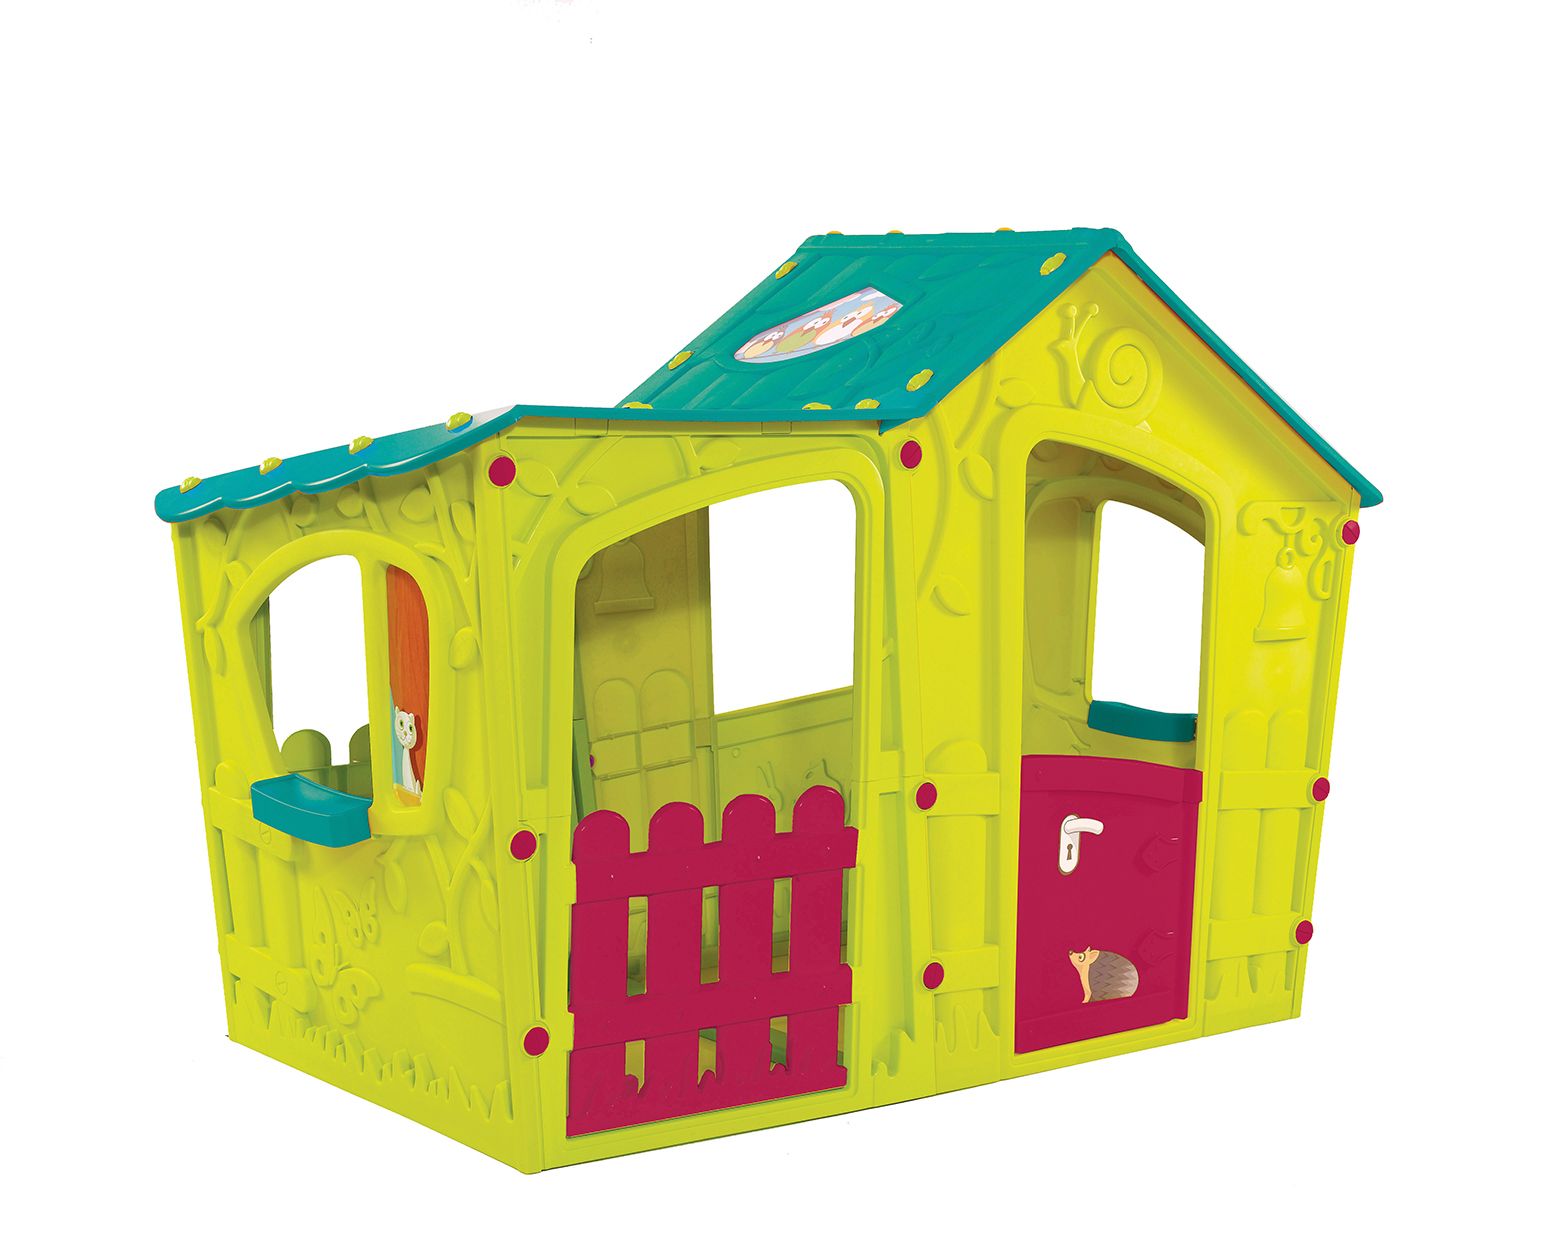 Keter Magic Villa bērnu rotaļu māja, zaļa/tirkīza 29190655732 Rotaļu mājas un slidkalniņi